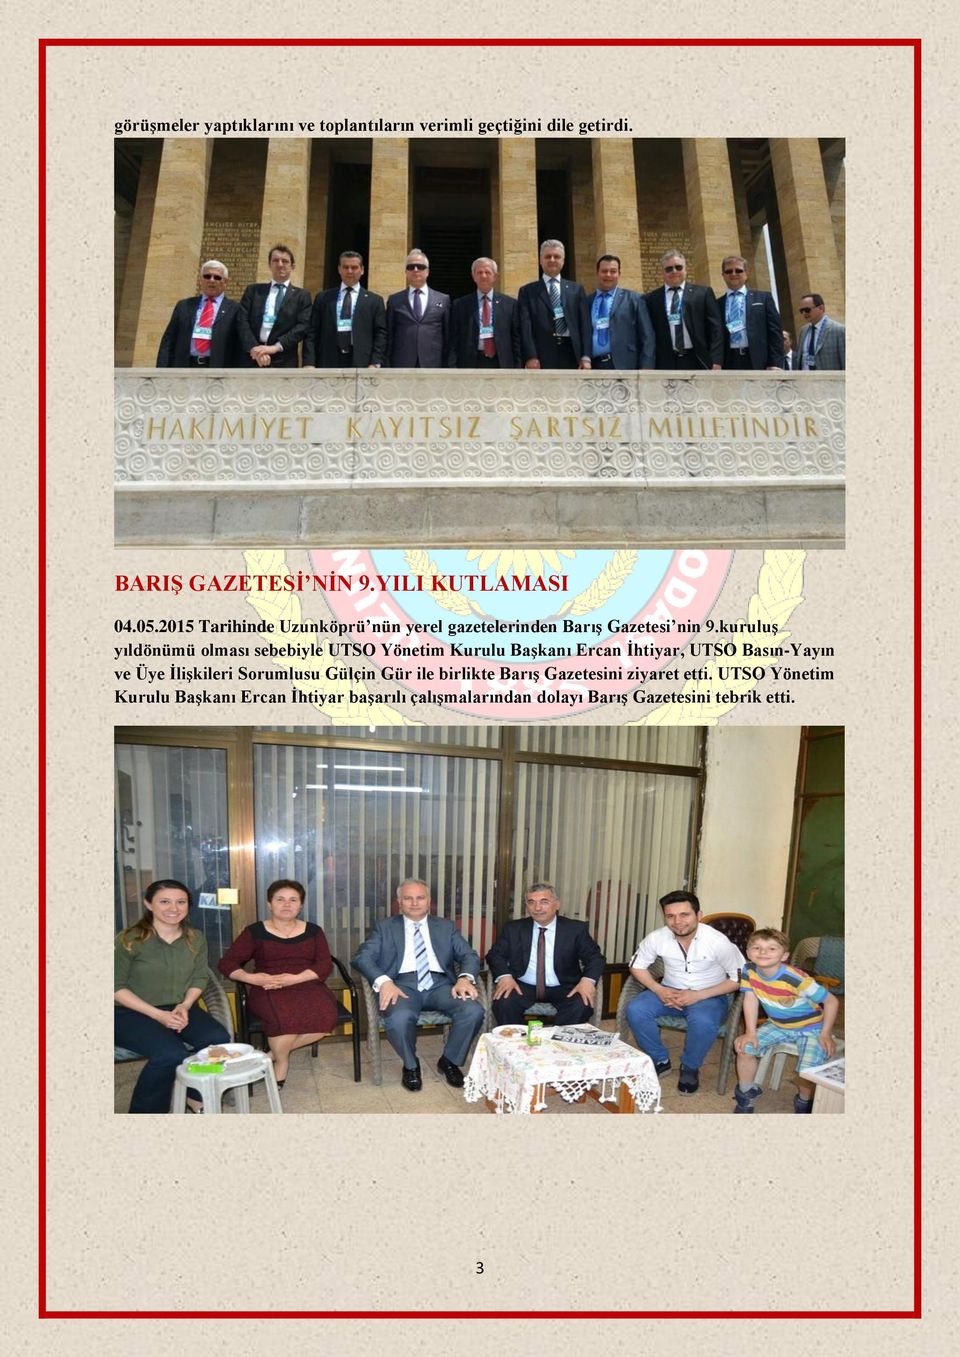 kuruluş yıldönümü olması sebebiyle UTSO Yönetim Kurulu Başkanı Ercan İhtiyar, UTSO Basın-Yayın ve Üye İlişkileri